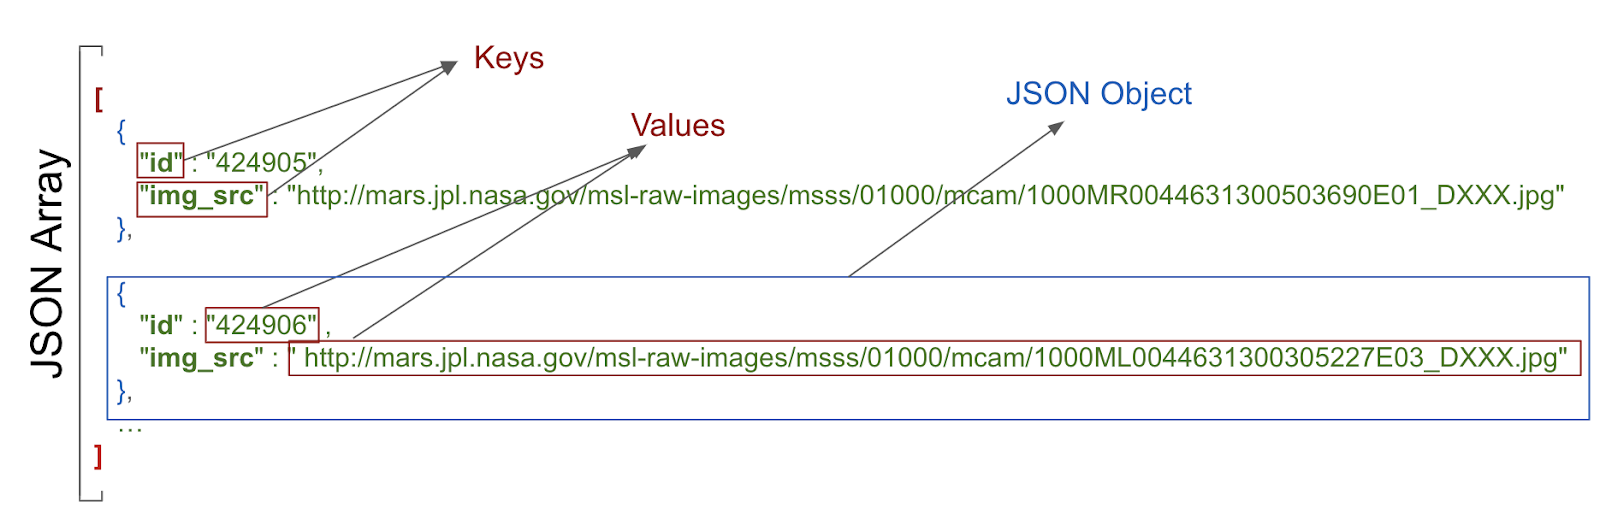 顯示鍵值和 JSON 物件